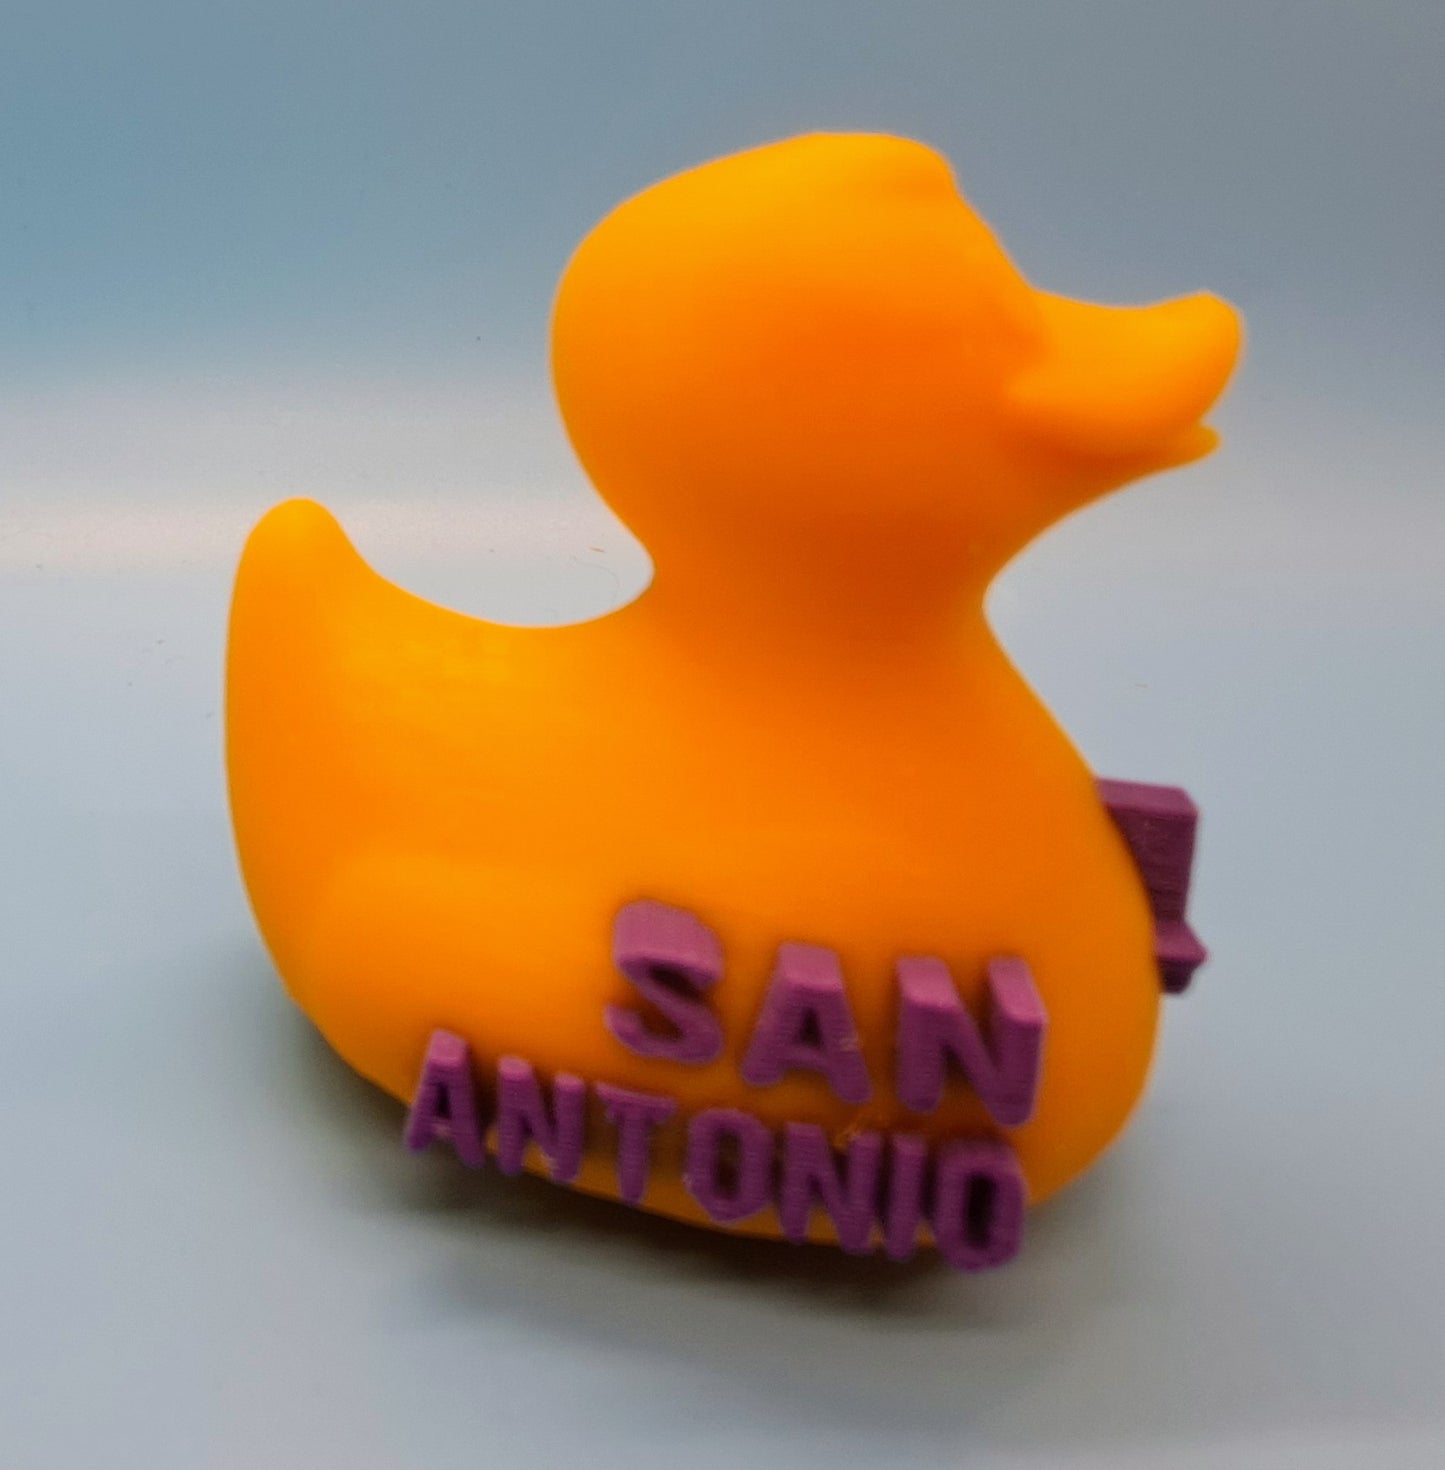 San Antonio Rubber Ducks